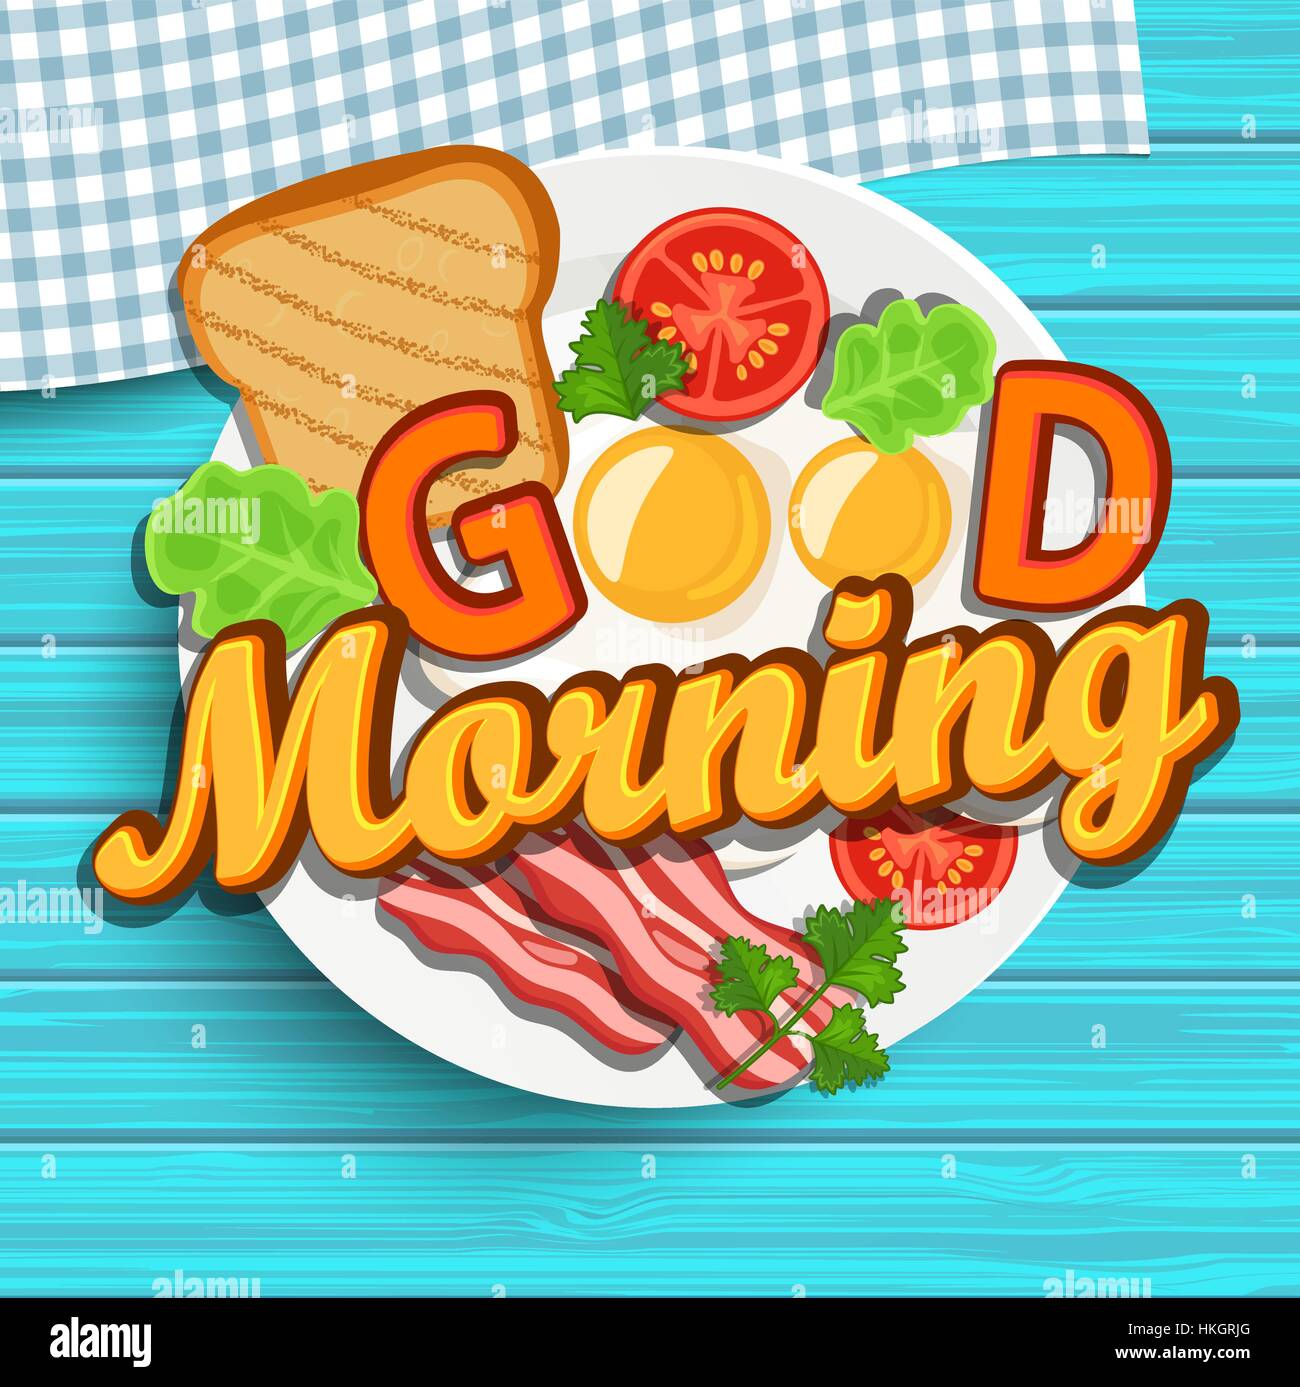 Una buona prima colazione al mattino - uovo fritto, pomodori, bacon e toast. Vista dall'alto. Blu texture di legno. Lettering - Buongiorno, illustrazione vettoriale. Illustrazione Vettoriale